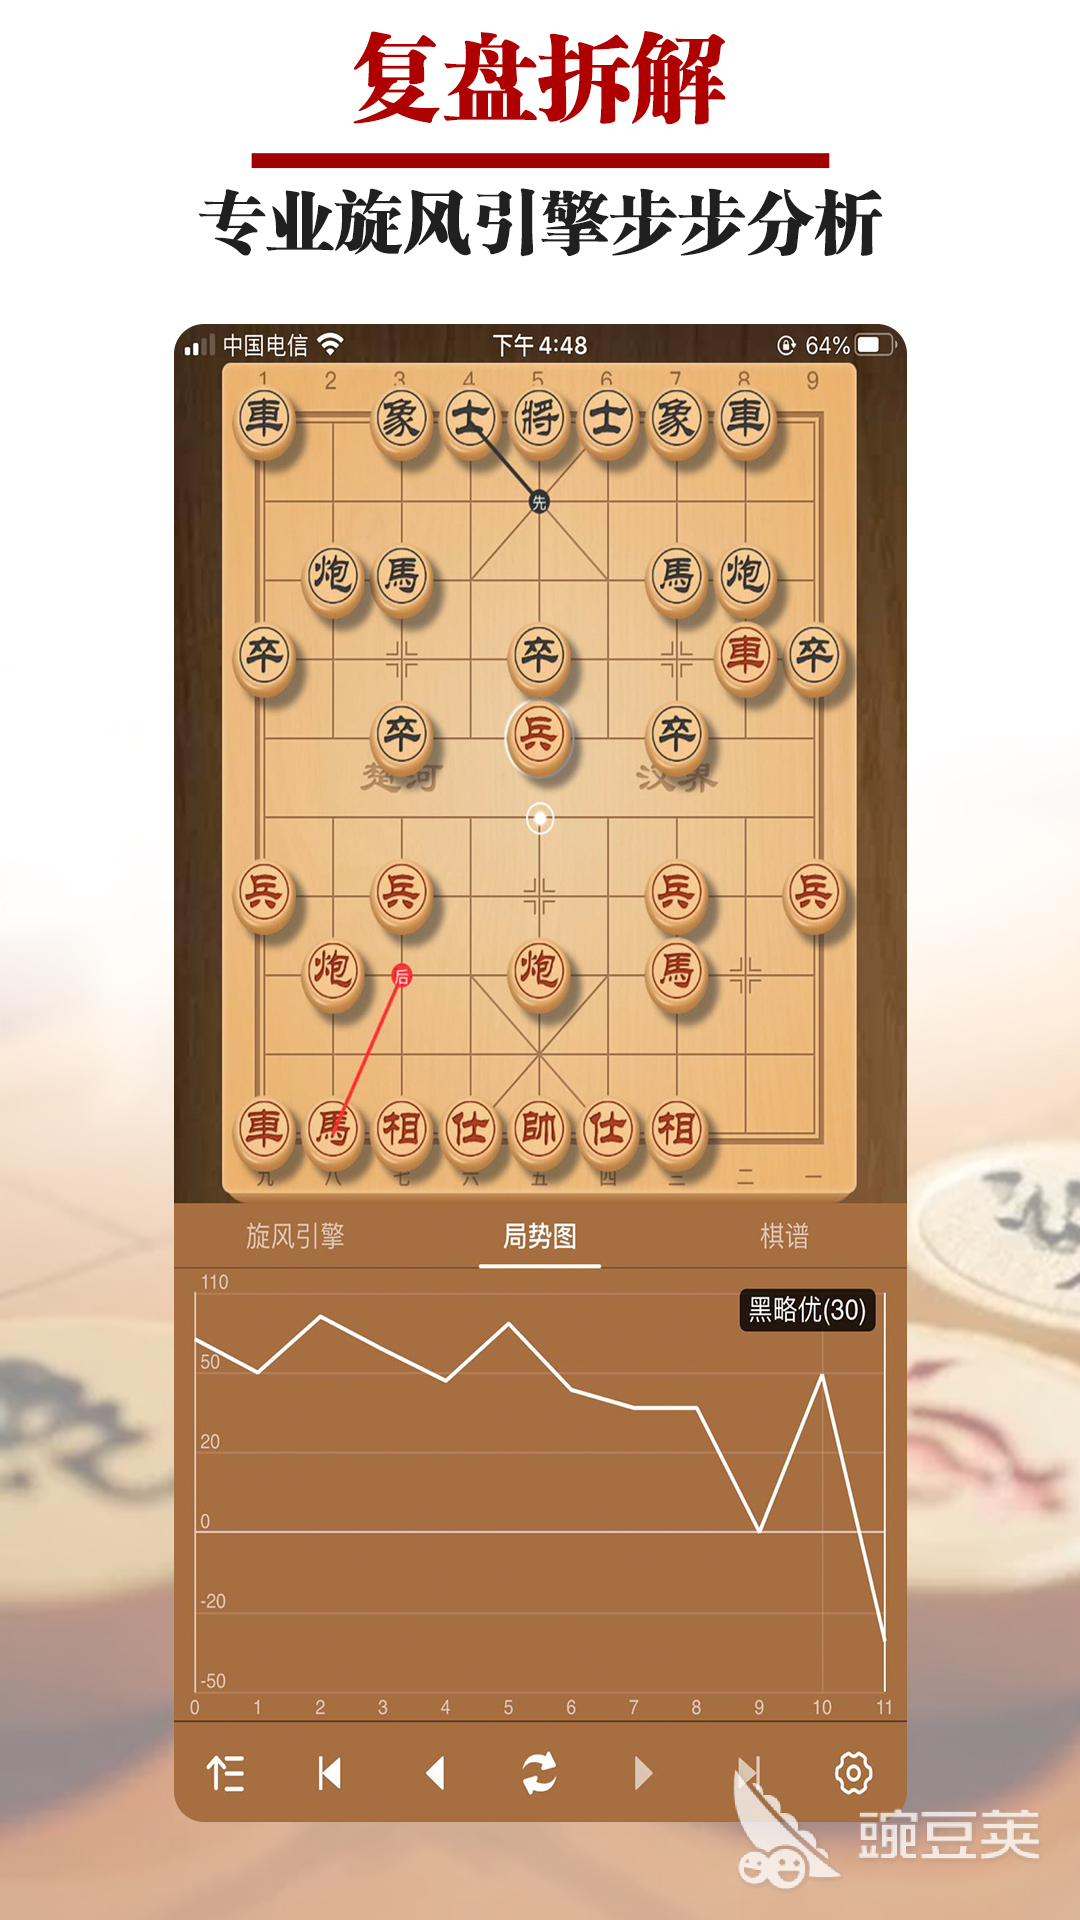 好玩的象棋棋谱app有哪些 象棋软件下载推荐插图